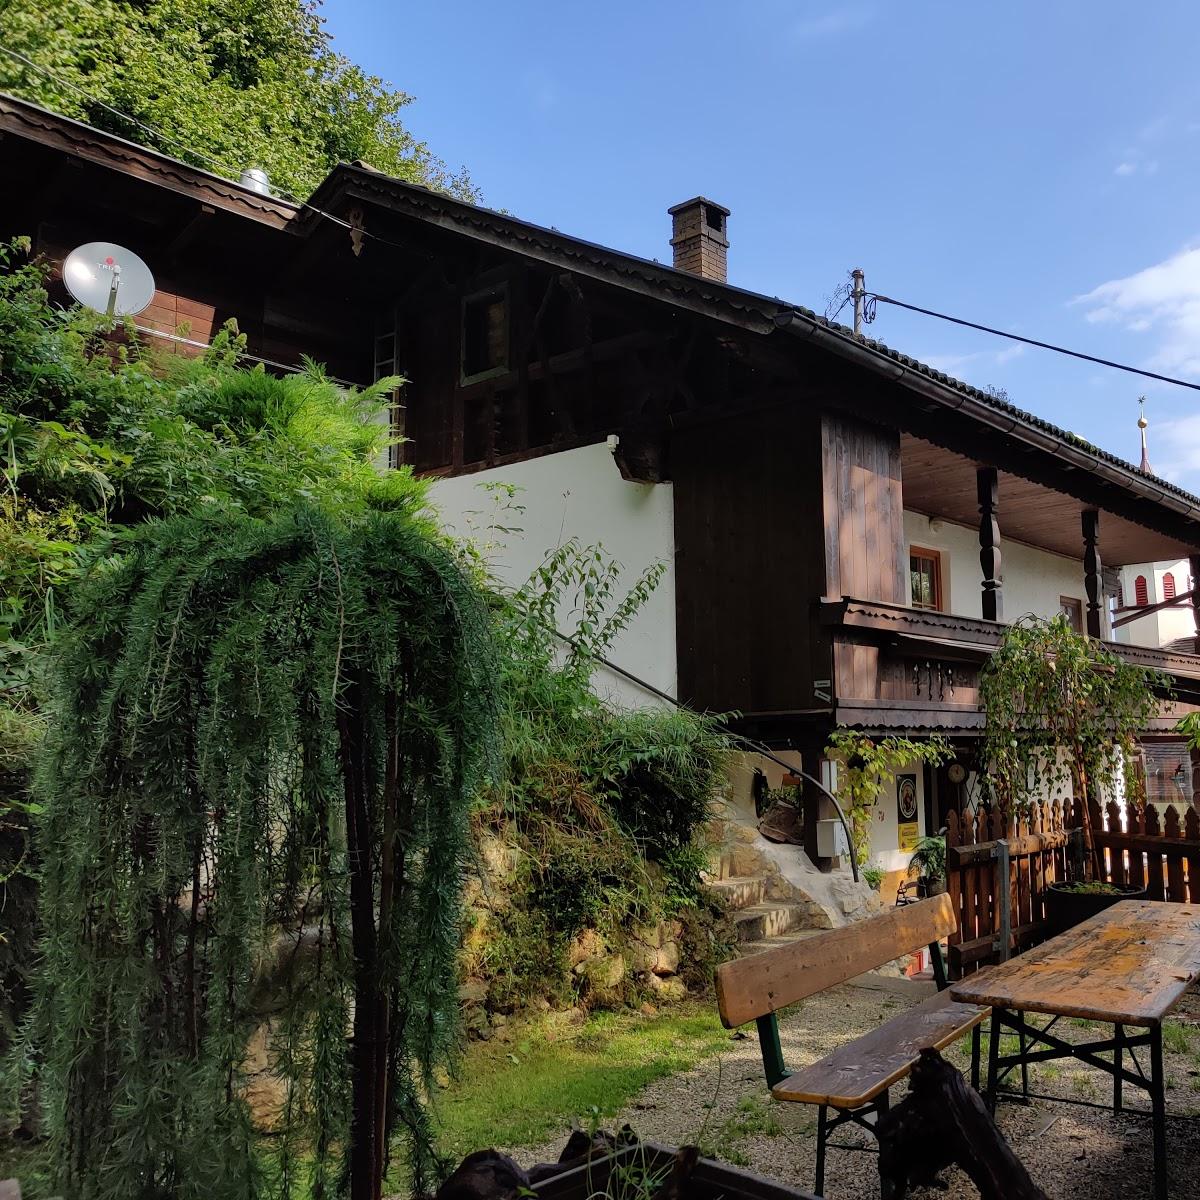 Restaurant "Gasthaus Maria Brettfall" in Strass im Zillertal